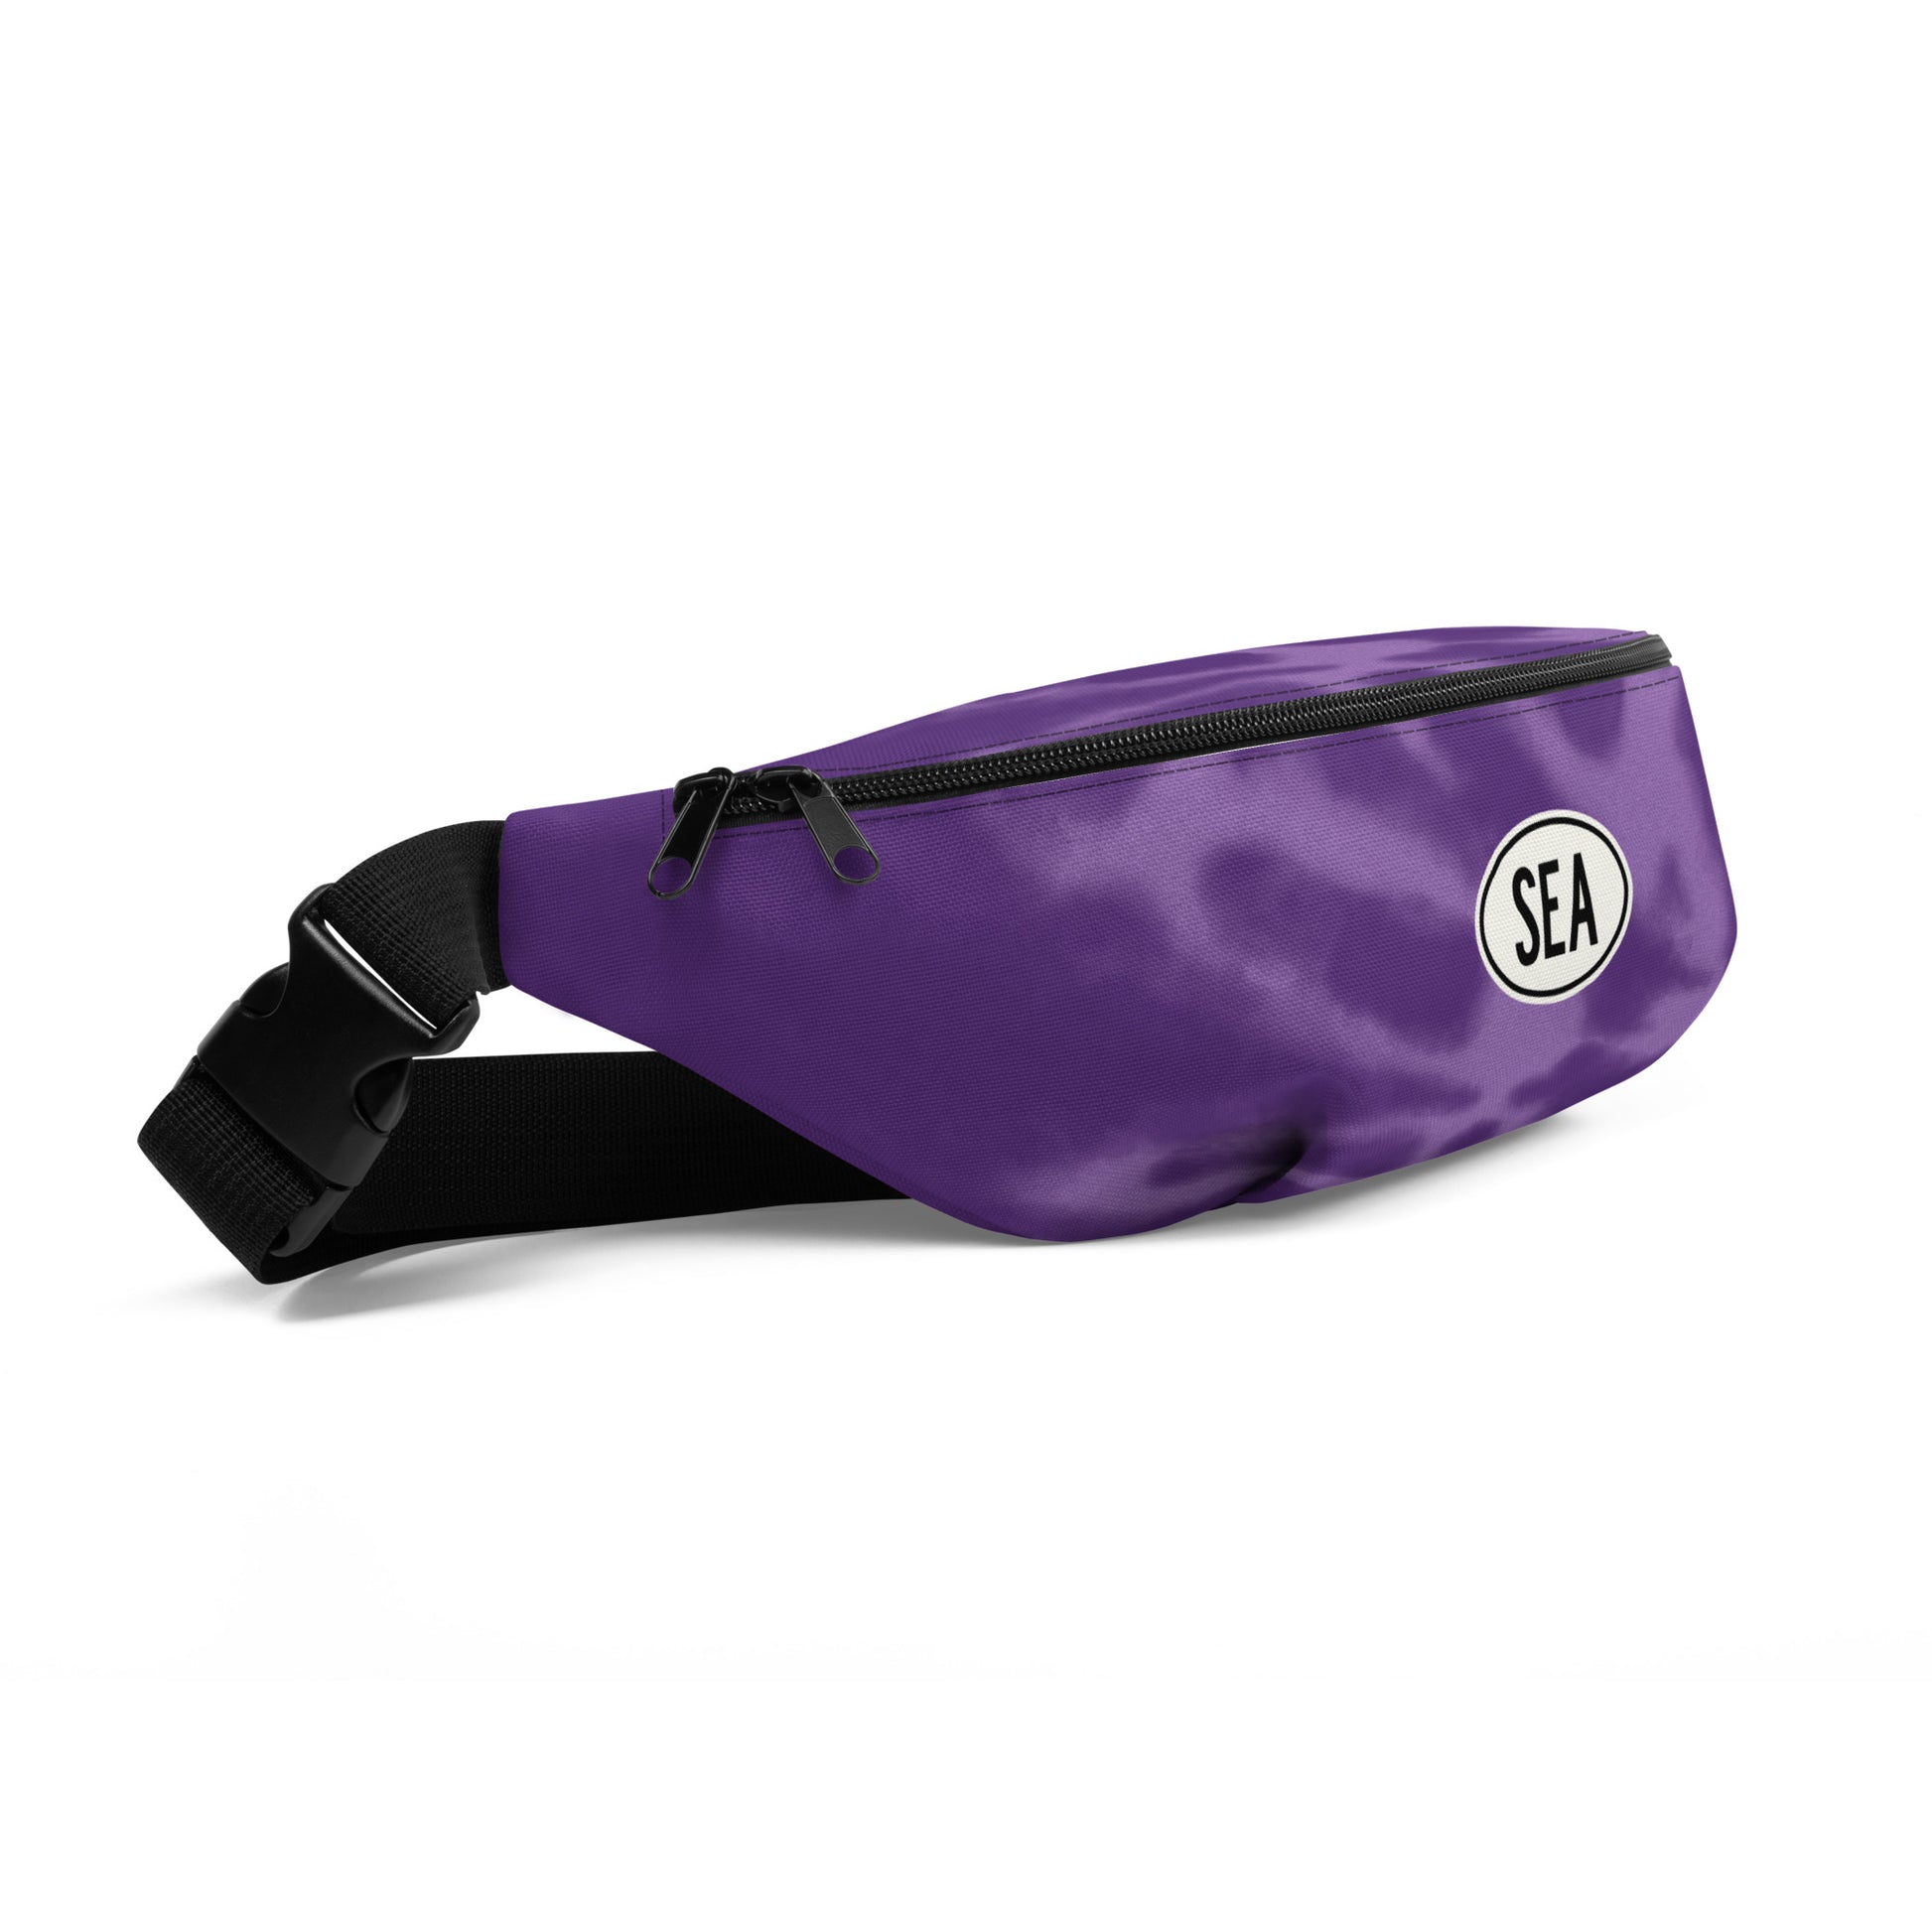 Fanny Pack - Purple Tie-Dye • SEA Seattle • YHM Designs - Image 07